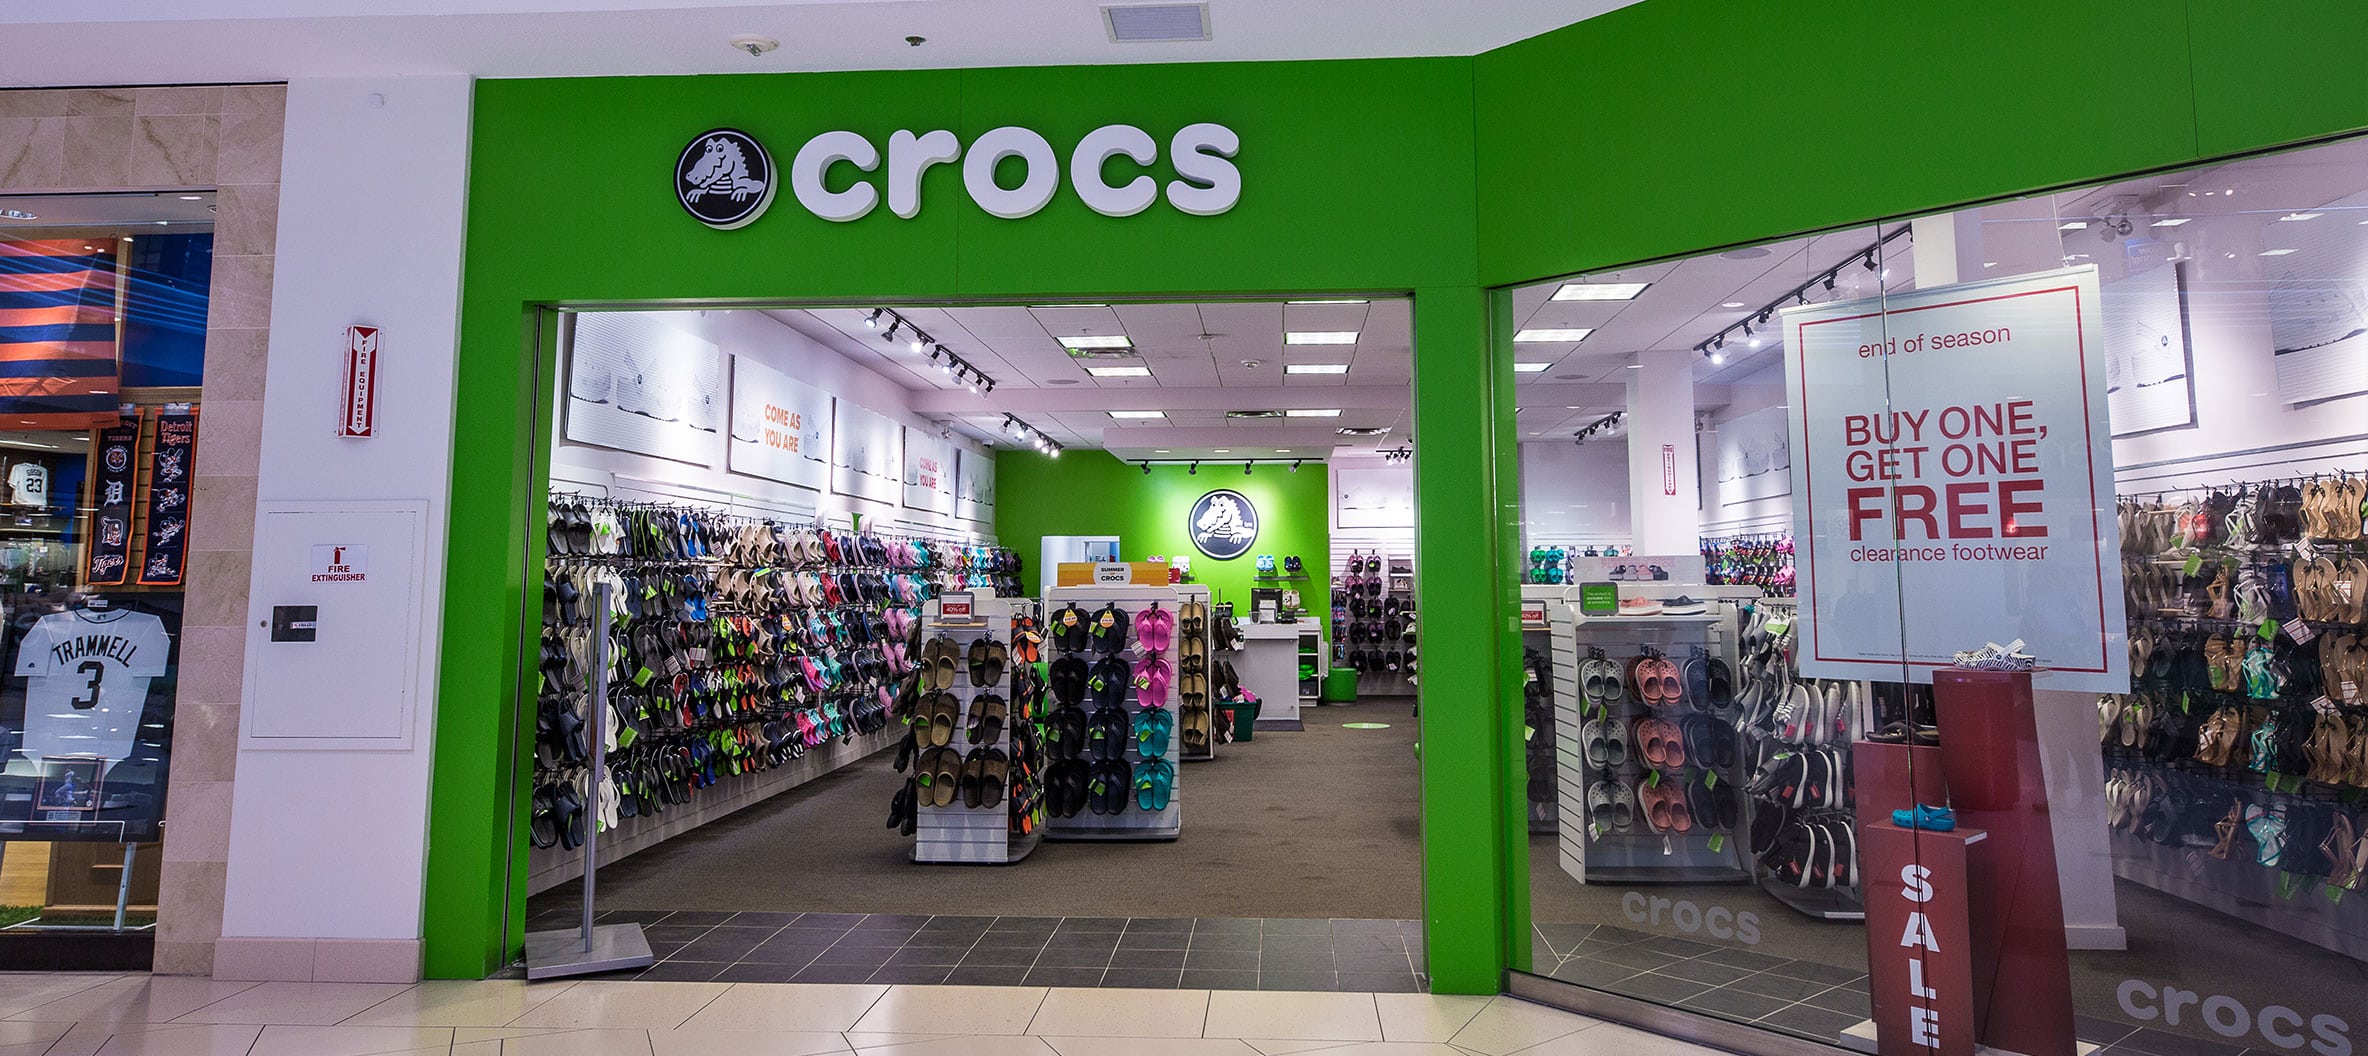 nearby crocs showroom